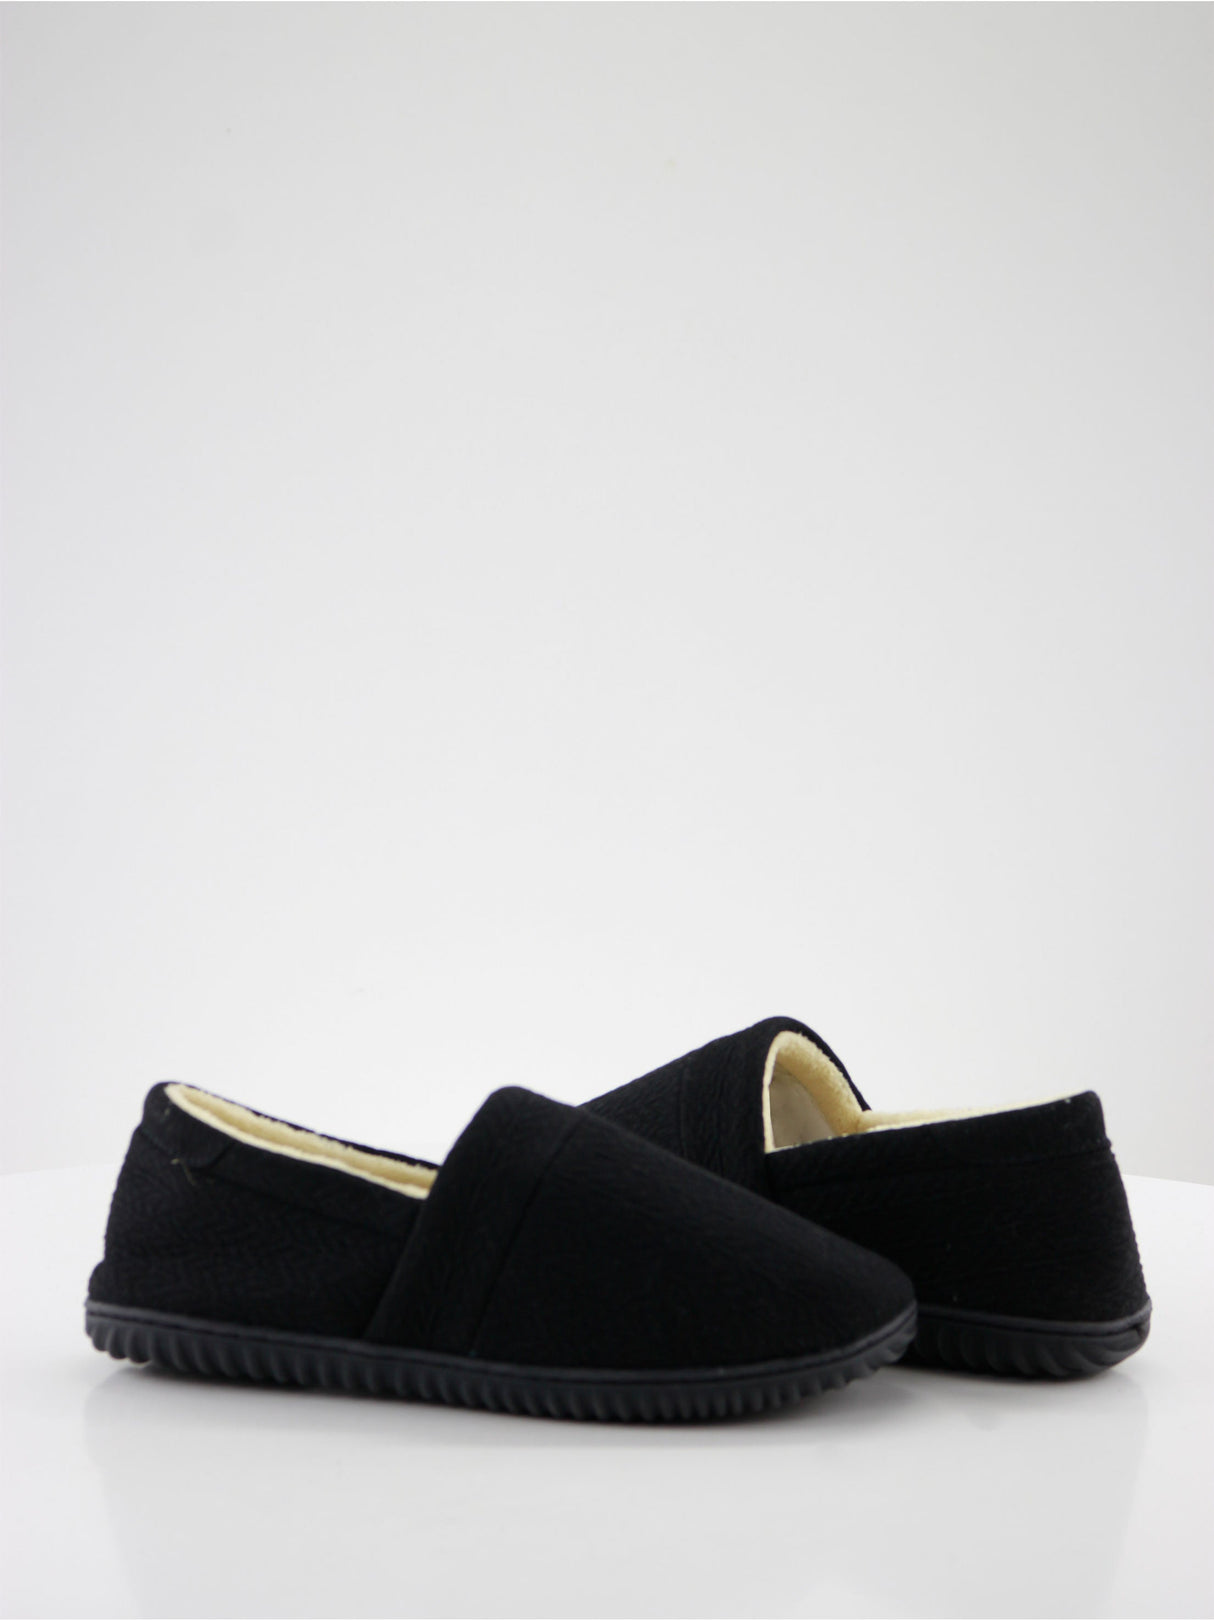 Image for Women's Closed Toe Slip On Flat Slippers,Black